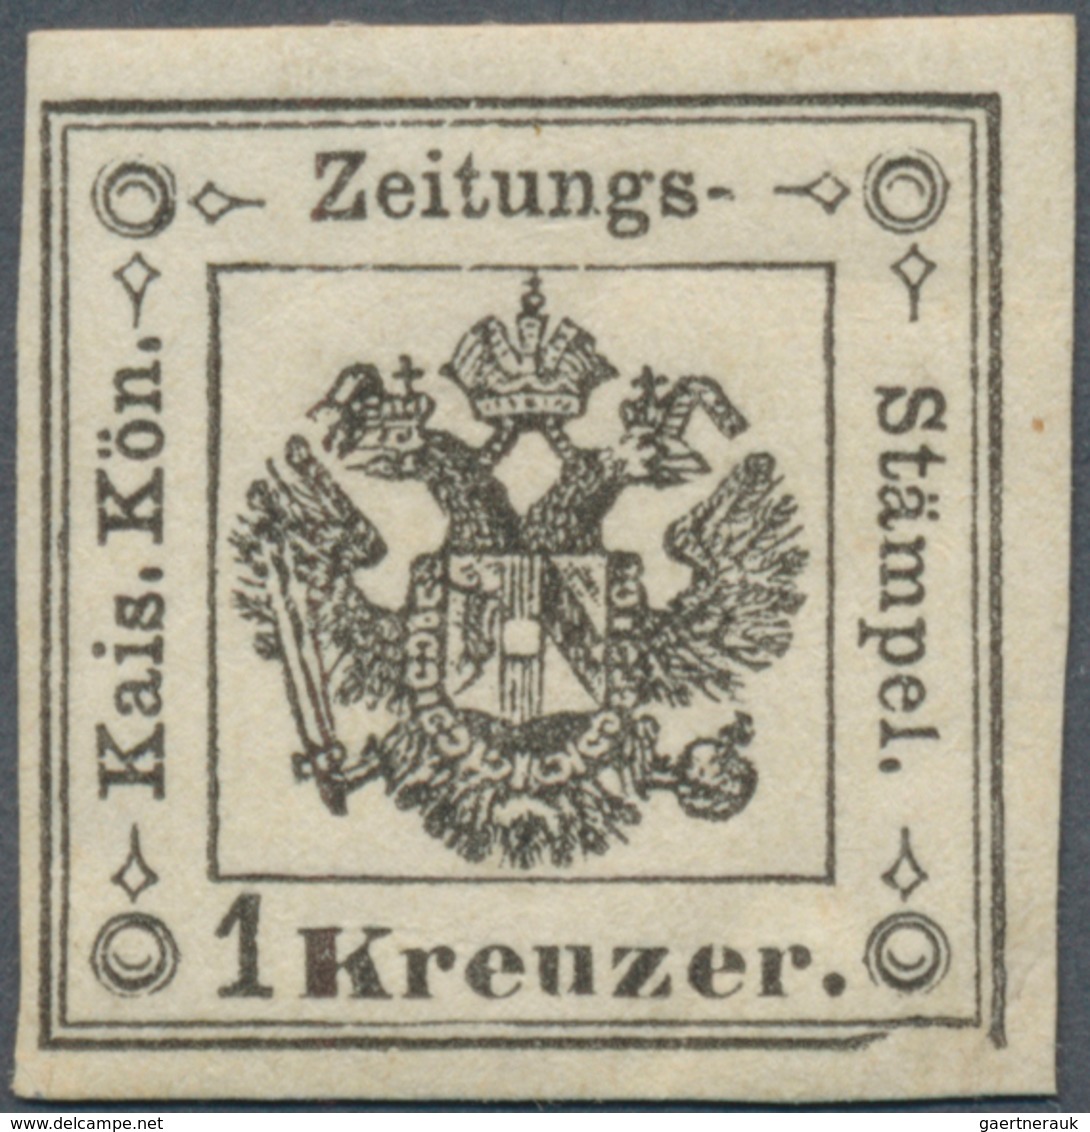 Österreich - Lombardei Und Venetien - Zeitungsstempelmarken: 1859, 1 Kr. Schwarz, Farbfrisch Und All - Lombardo-Venetien